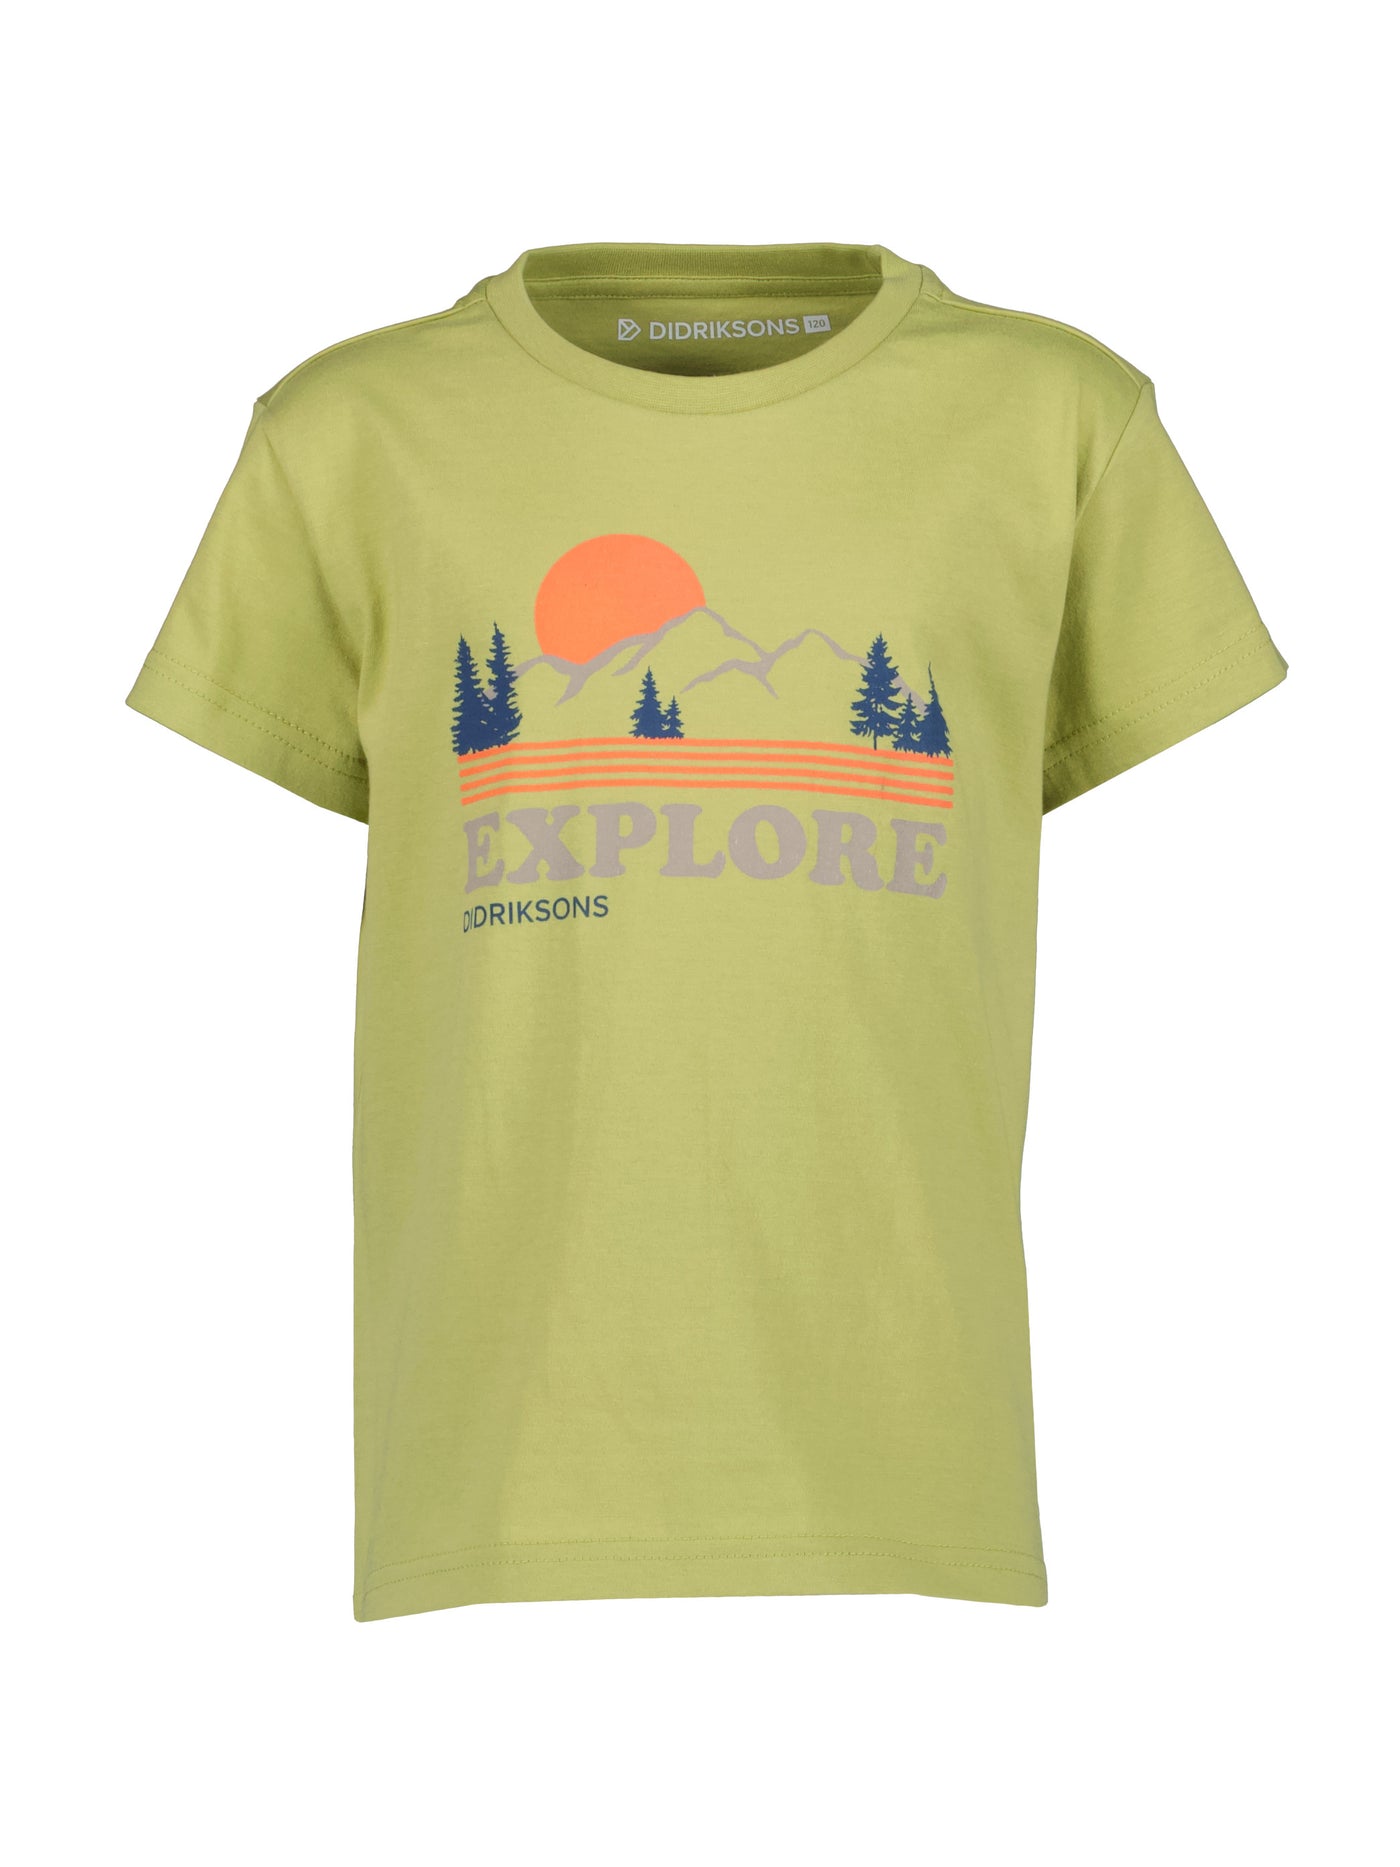 Didriksonsin lasten ja nuorten Mynta logo t-paita vaaleanvihreässä sävyssä edestä kuvattuna